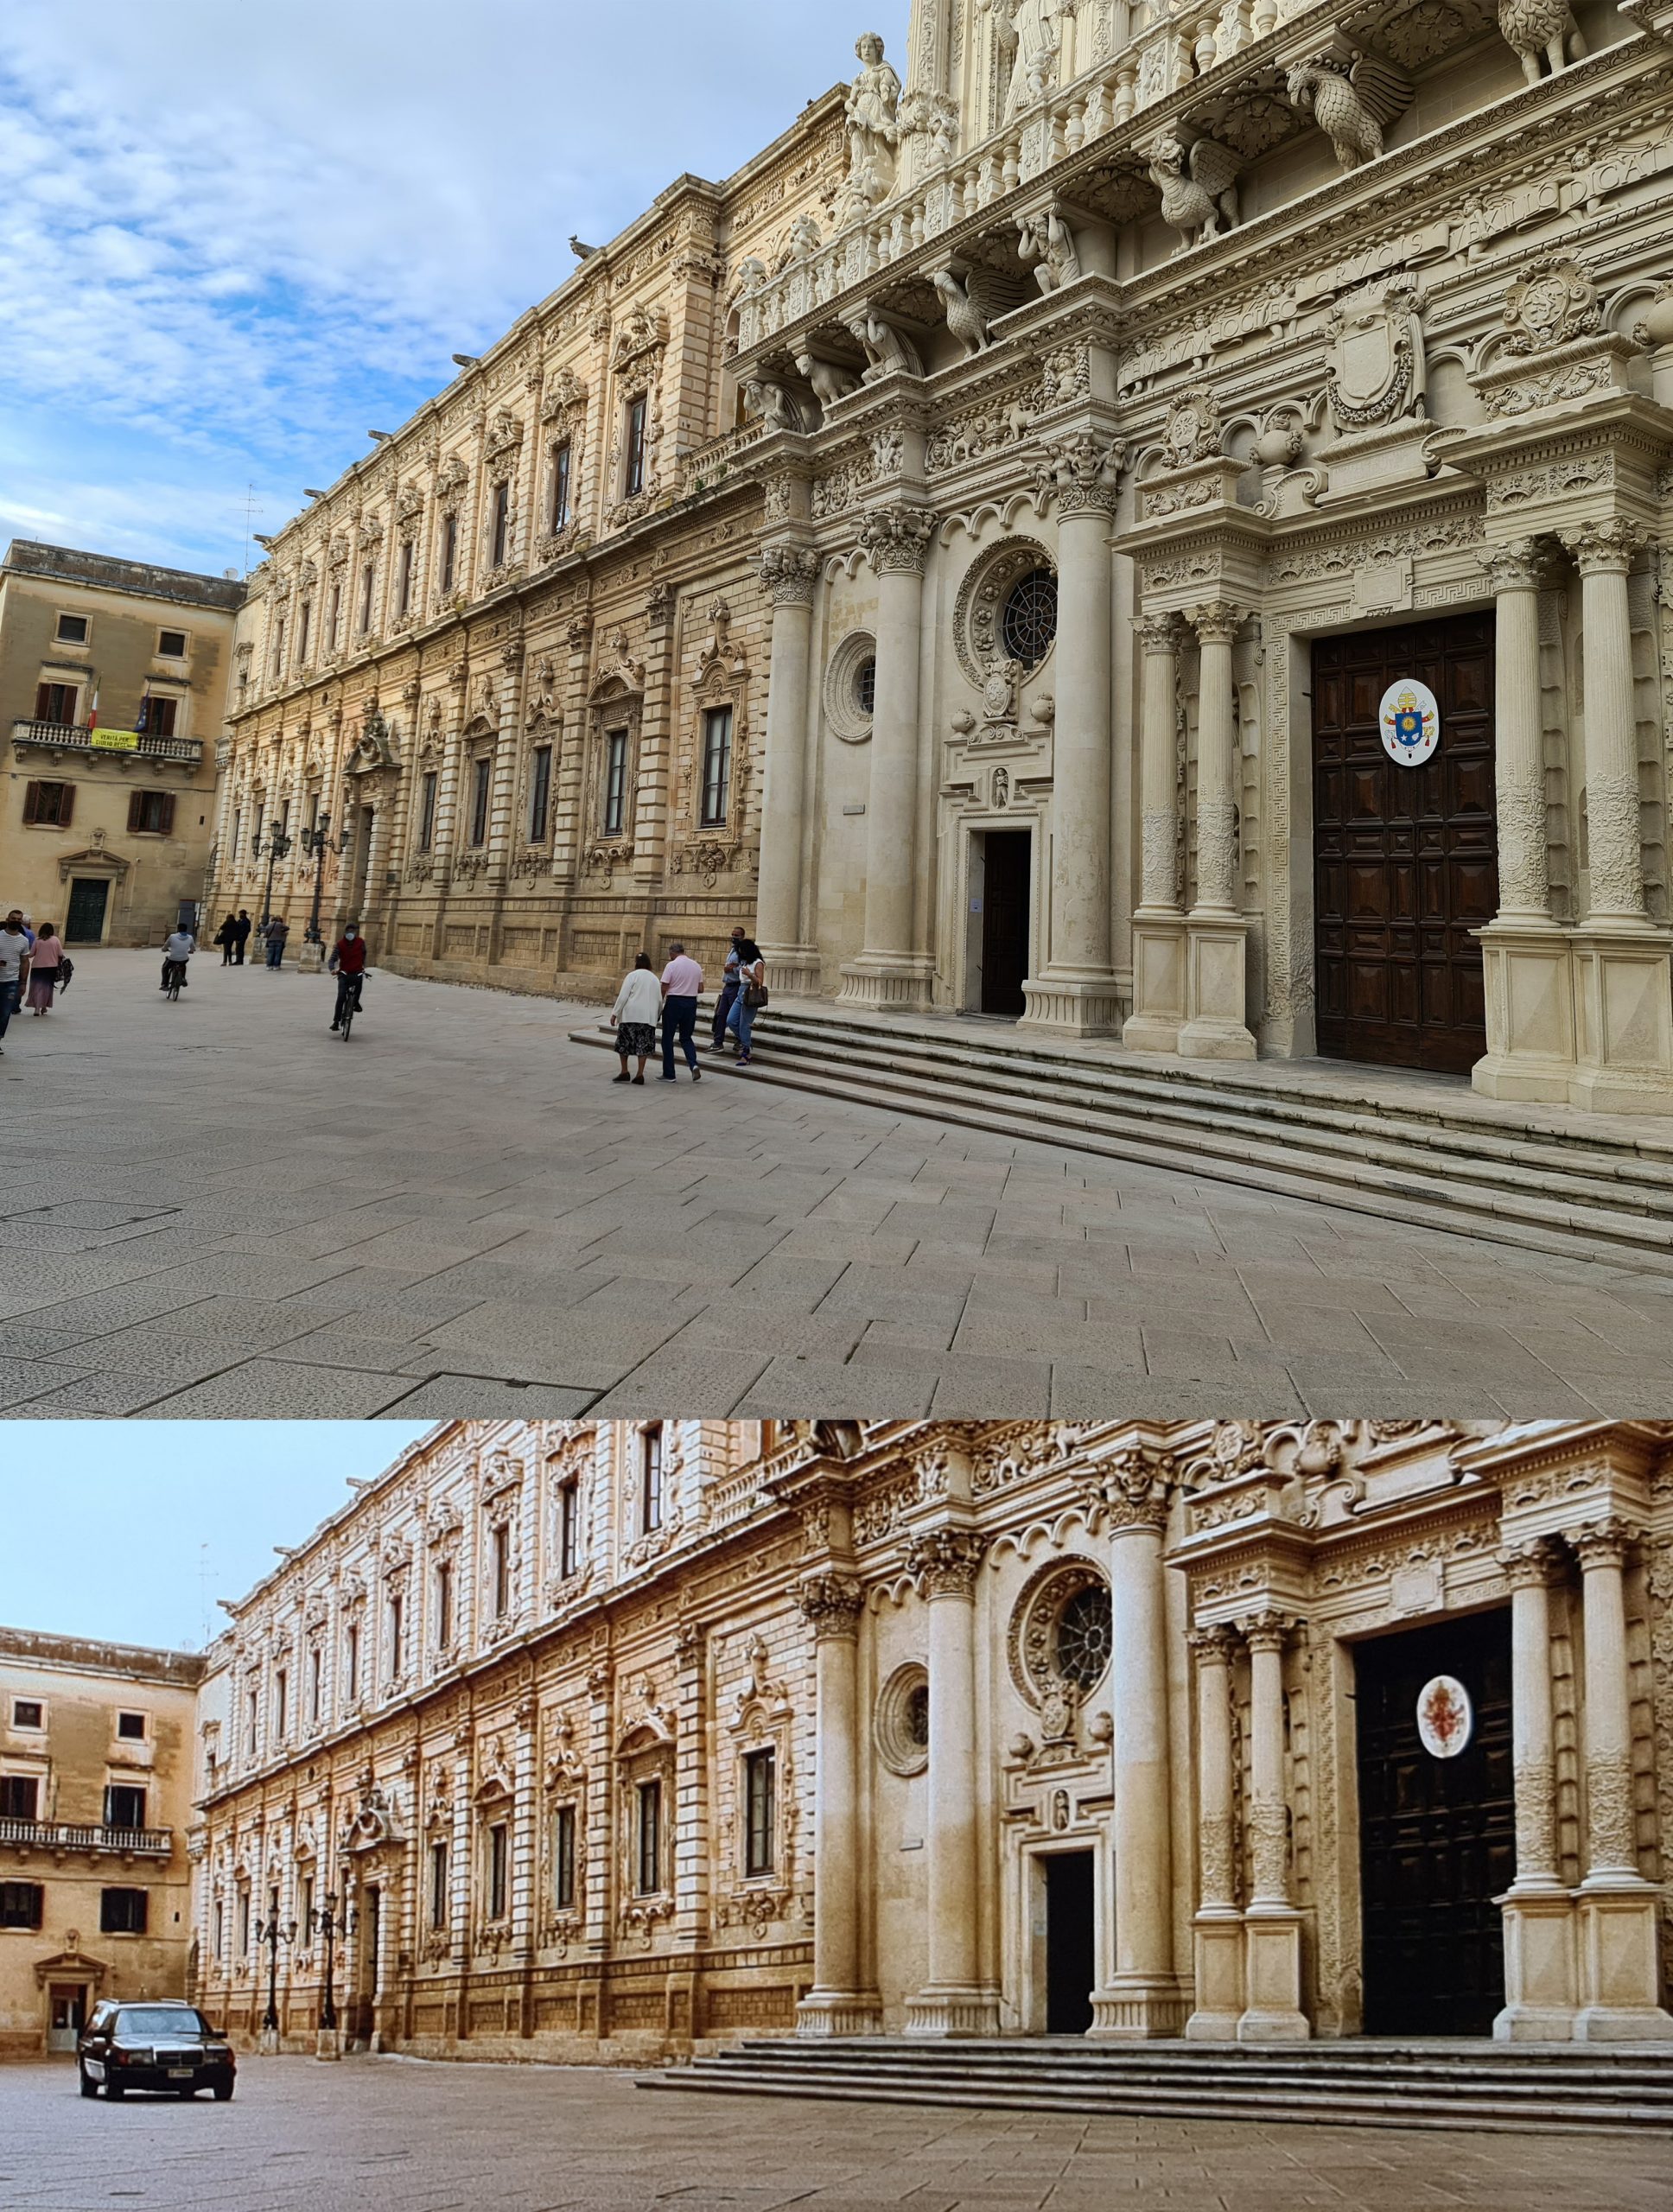 La facciata barocca, piena di meravigliosi dettagli, della Basilica di Santa Croce a Lecce